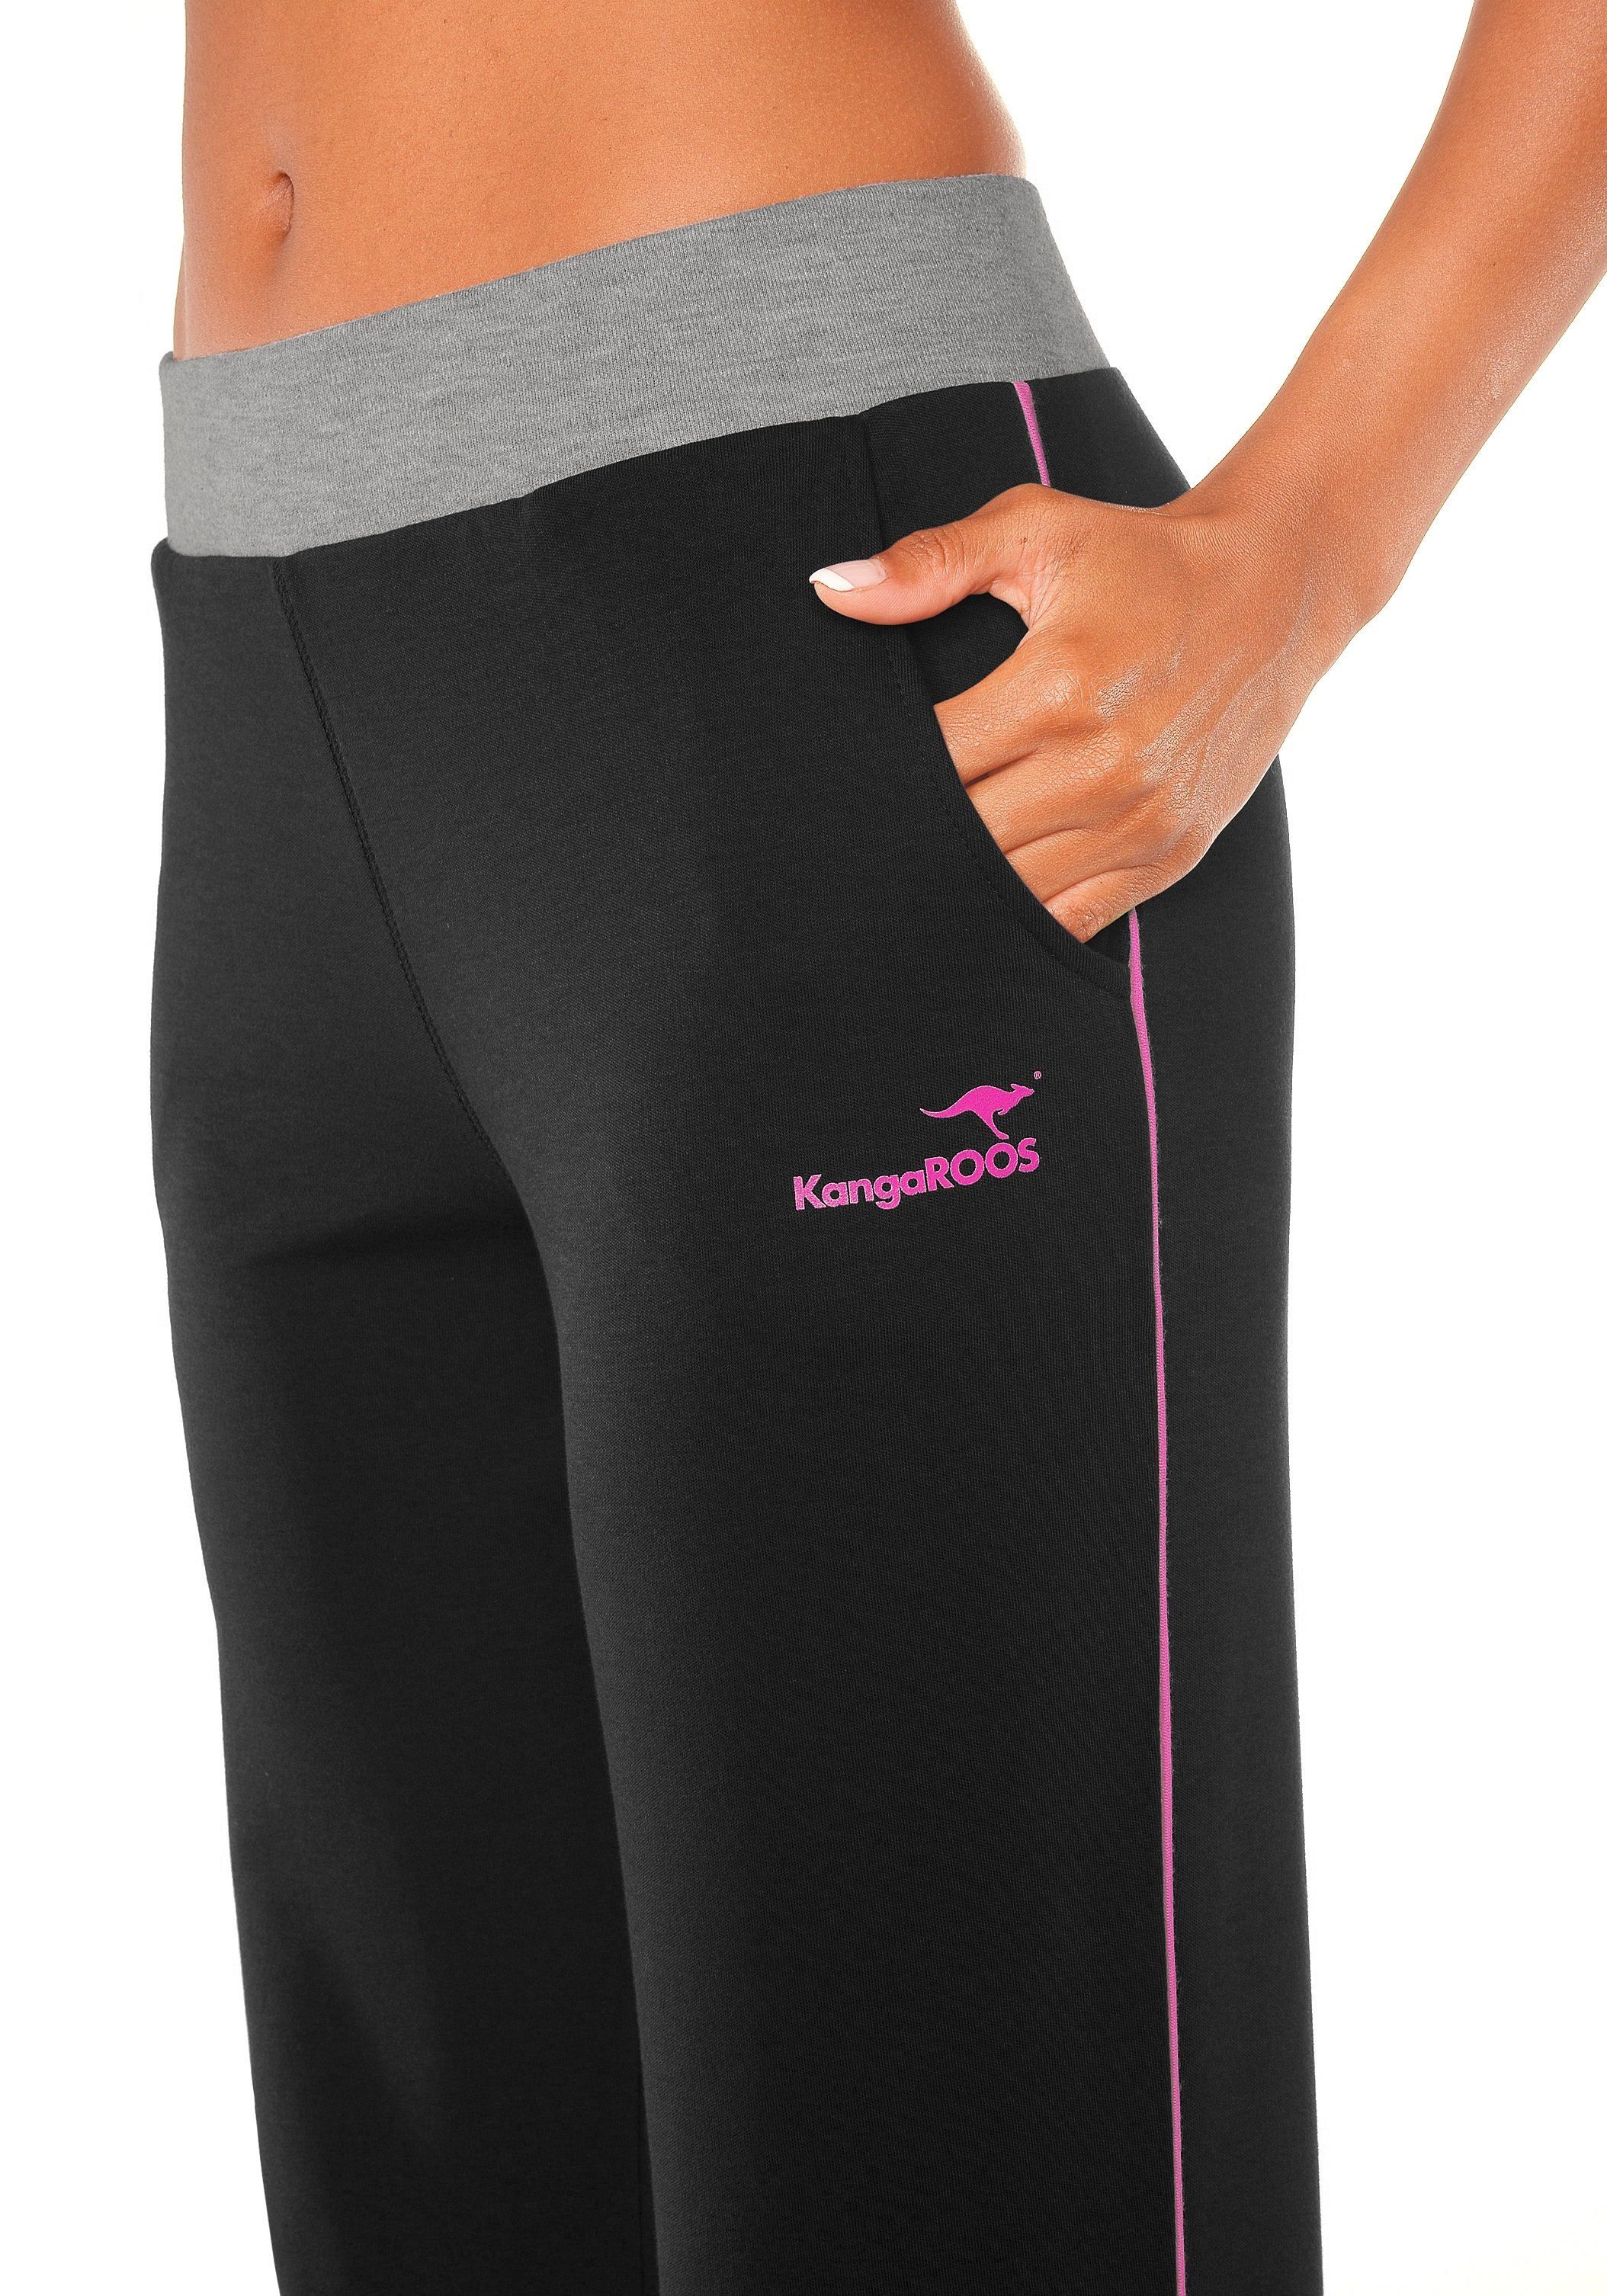 Relaxhose schwarz-pink-pink Bund, KangaROOS Loungeanzug breitem mit Loungewear,